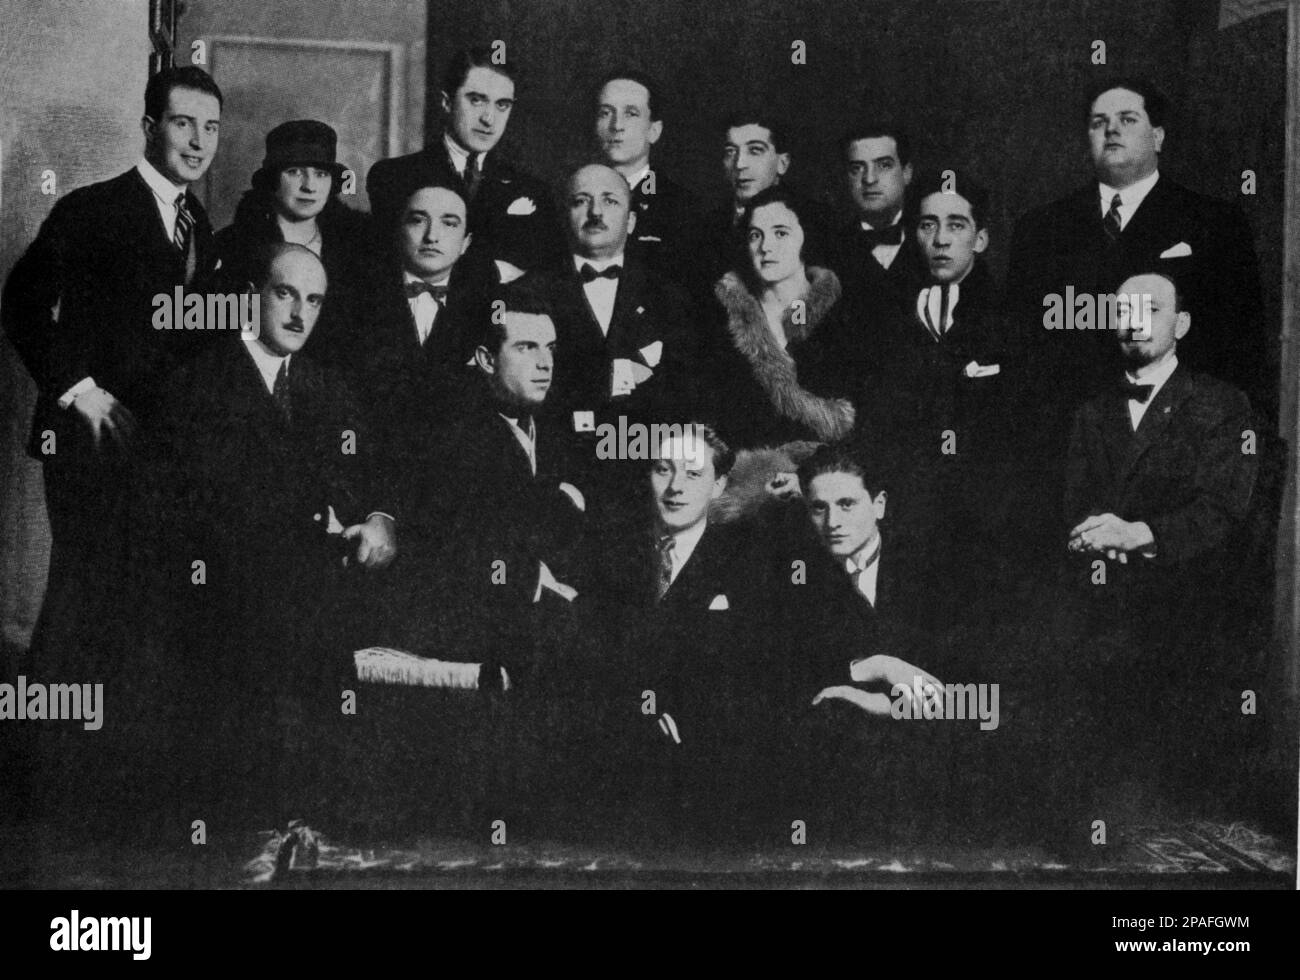 La foto del gruppo di artisti italiani di FUTURISTI pubblicata nella rivista teatrale Avantgarde TEATRO , marzo - aprile 1927 : (Da sinistra) fedele AZARI , Franco CASAVOLA , D' ANGELI , ARMANDO MAZZA , Federico B. PINNA , FORTUNATO DEPERO , FILIPPO TOMMASO MARINETTI ( 1876 - 1944 ), BENEDETTA MARINETTI , Mino SOMENZI , Guglielmo JANNELLI , ENRICO PRAMPOLINI , Luigi RUSSOLO ed ESCODAME' . Foto di Caminada , Milano - FUTURISMO - FUTURISTA - FUTURISTA - STORIA DELl' ARTE - ARTE - MUSICA - MUSICA - amici - TEATRO - AVANGUARDIA - ritratto - ritratto - baffi - baffi - baffi - cravatta Foto Stock